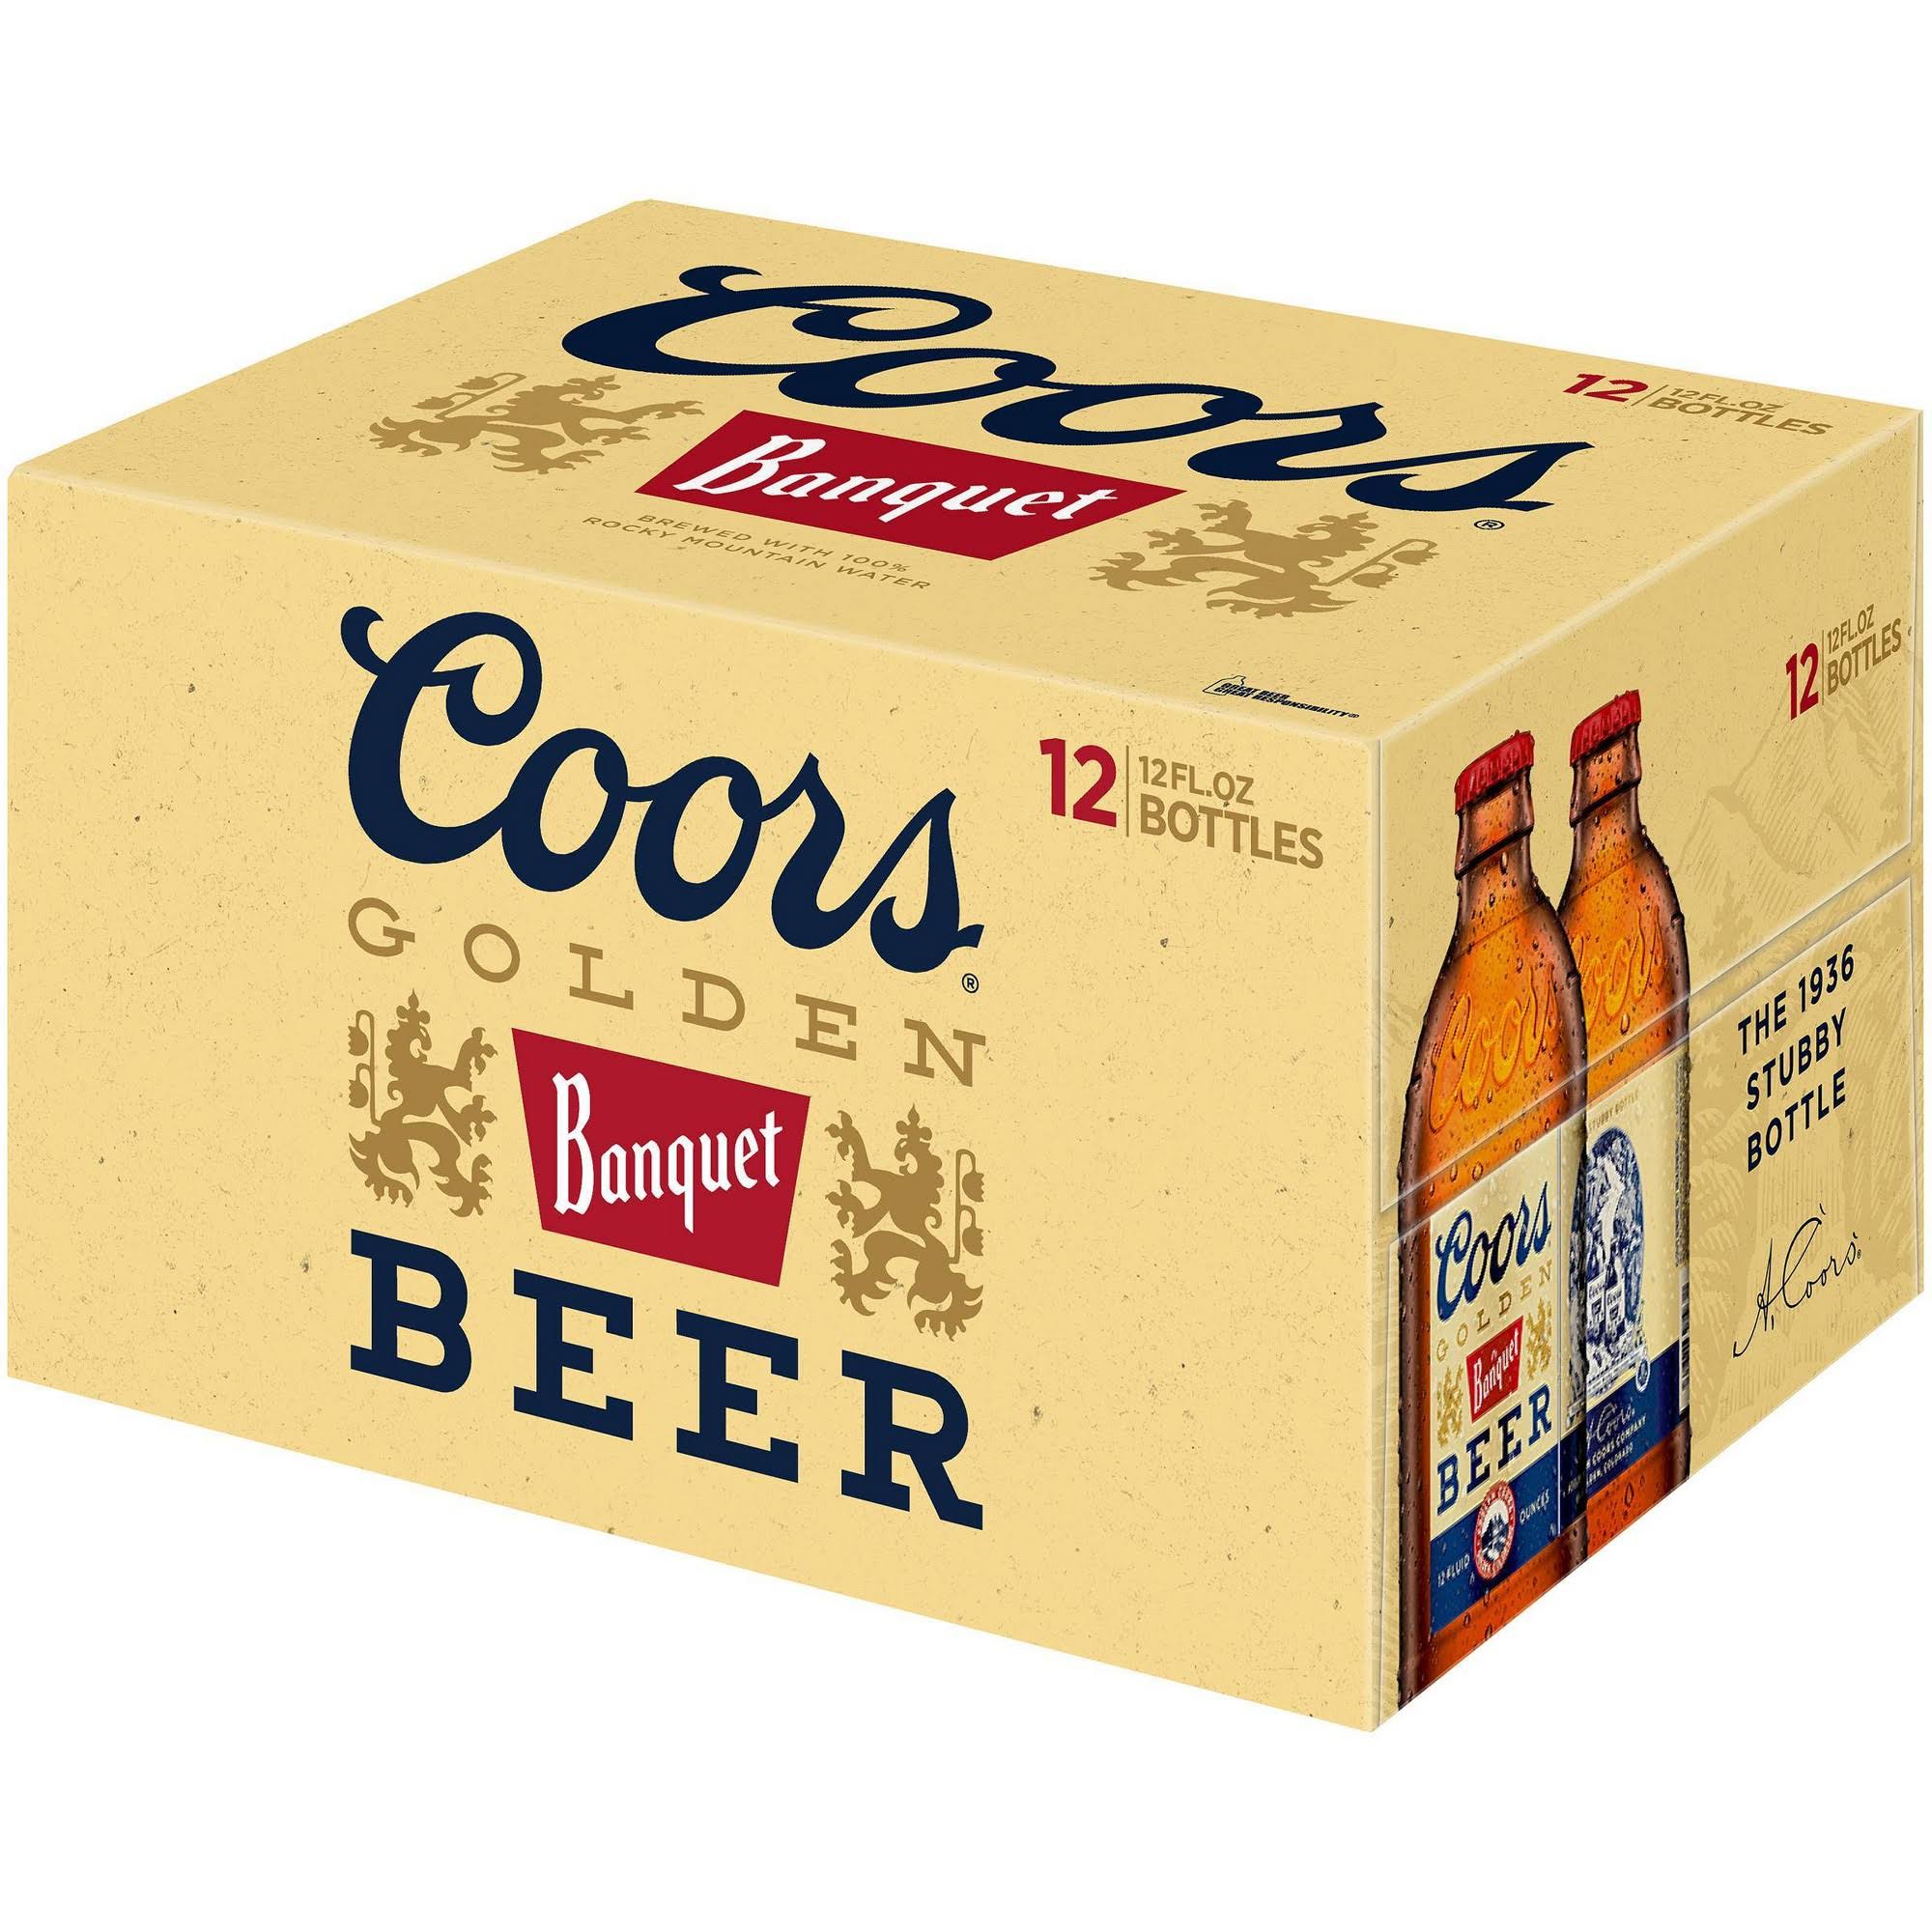 Coors Golden Banquet Beer